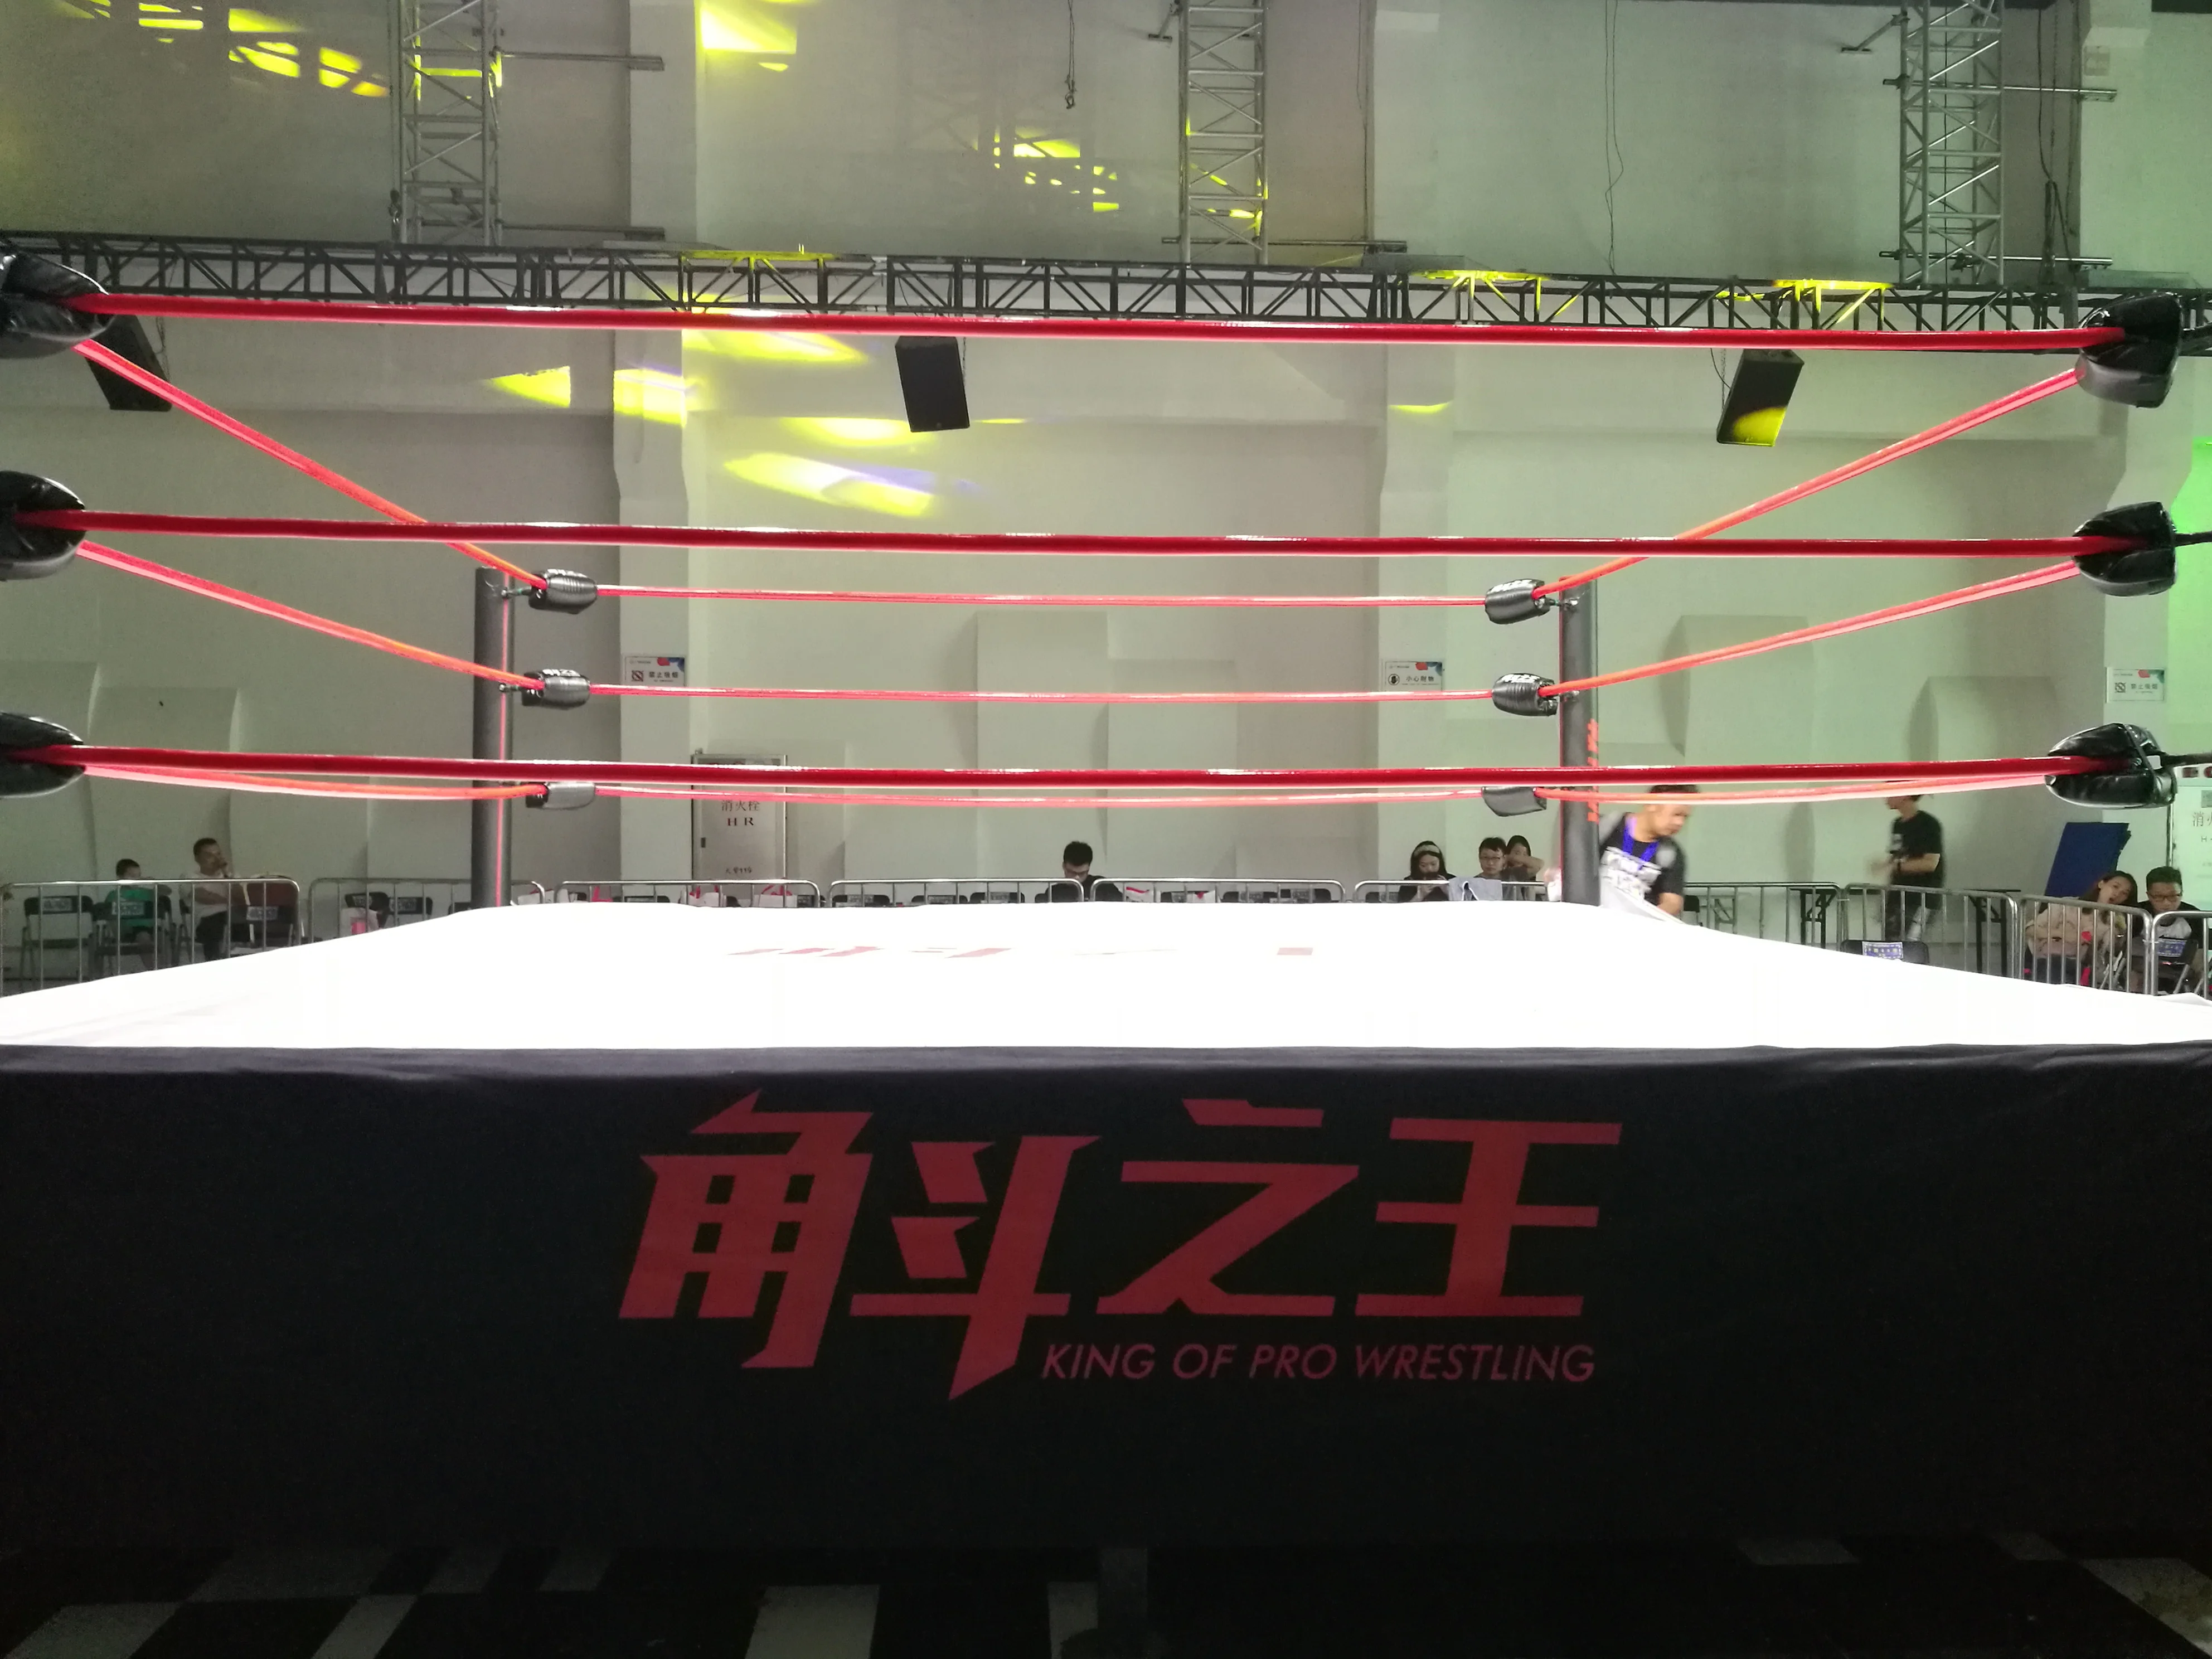 Fightbro бренд ИСБ Стандартный боксерский ринг/квадратный повышенной Бокс Борьба кольцо RG серии